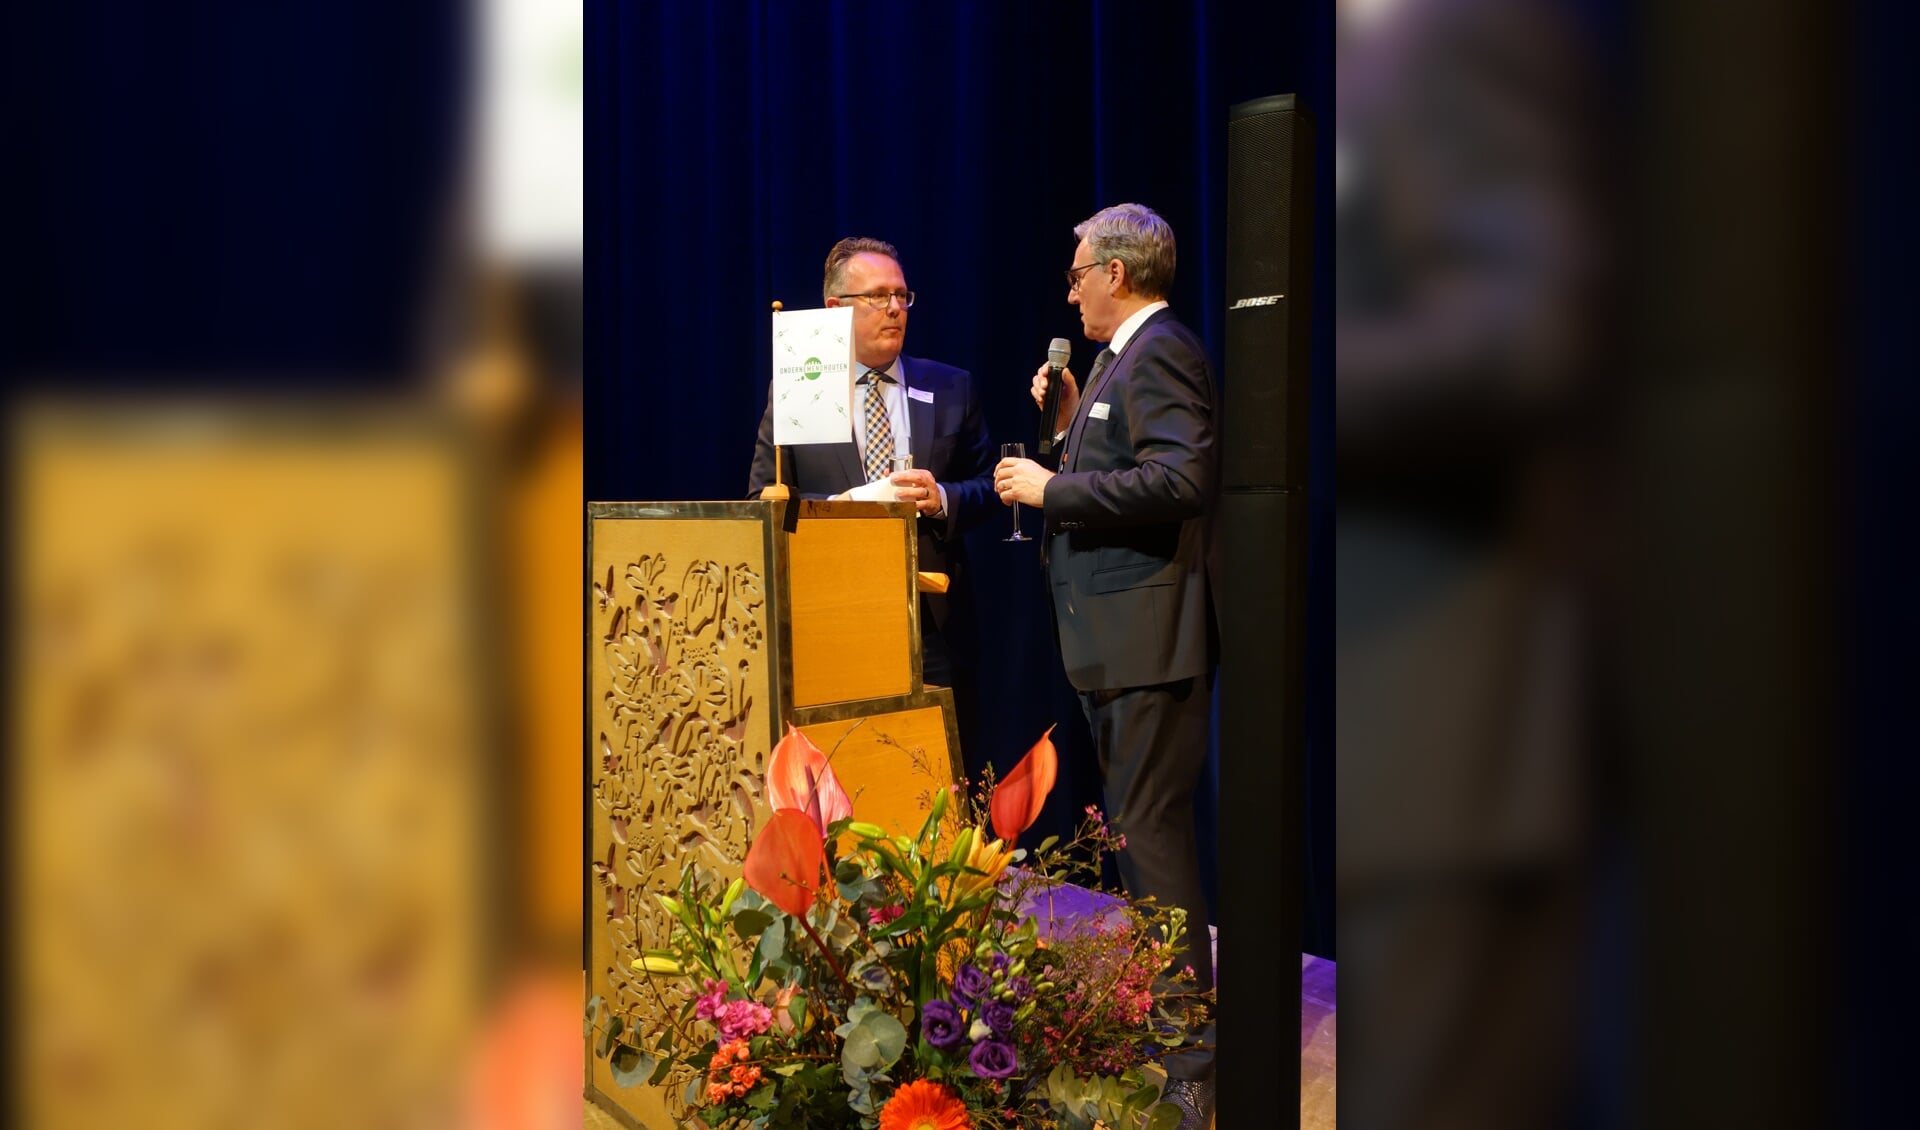 Wethouder Herman Geerdes en Voorzitter Peter de Rooy proosten op het nieuwe ondernemersjaar